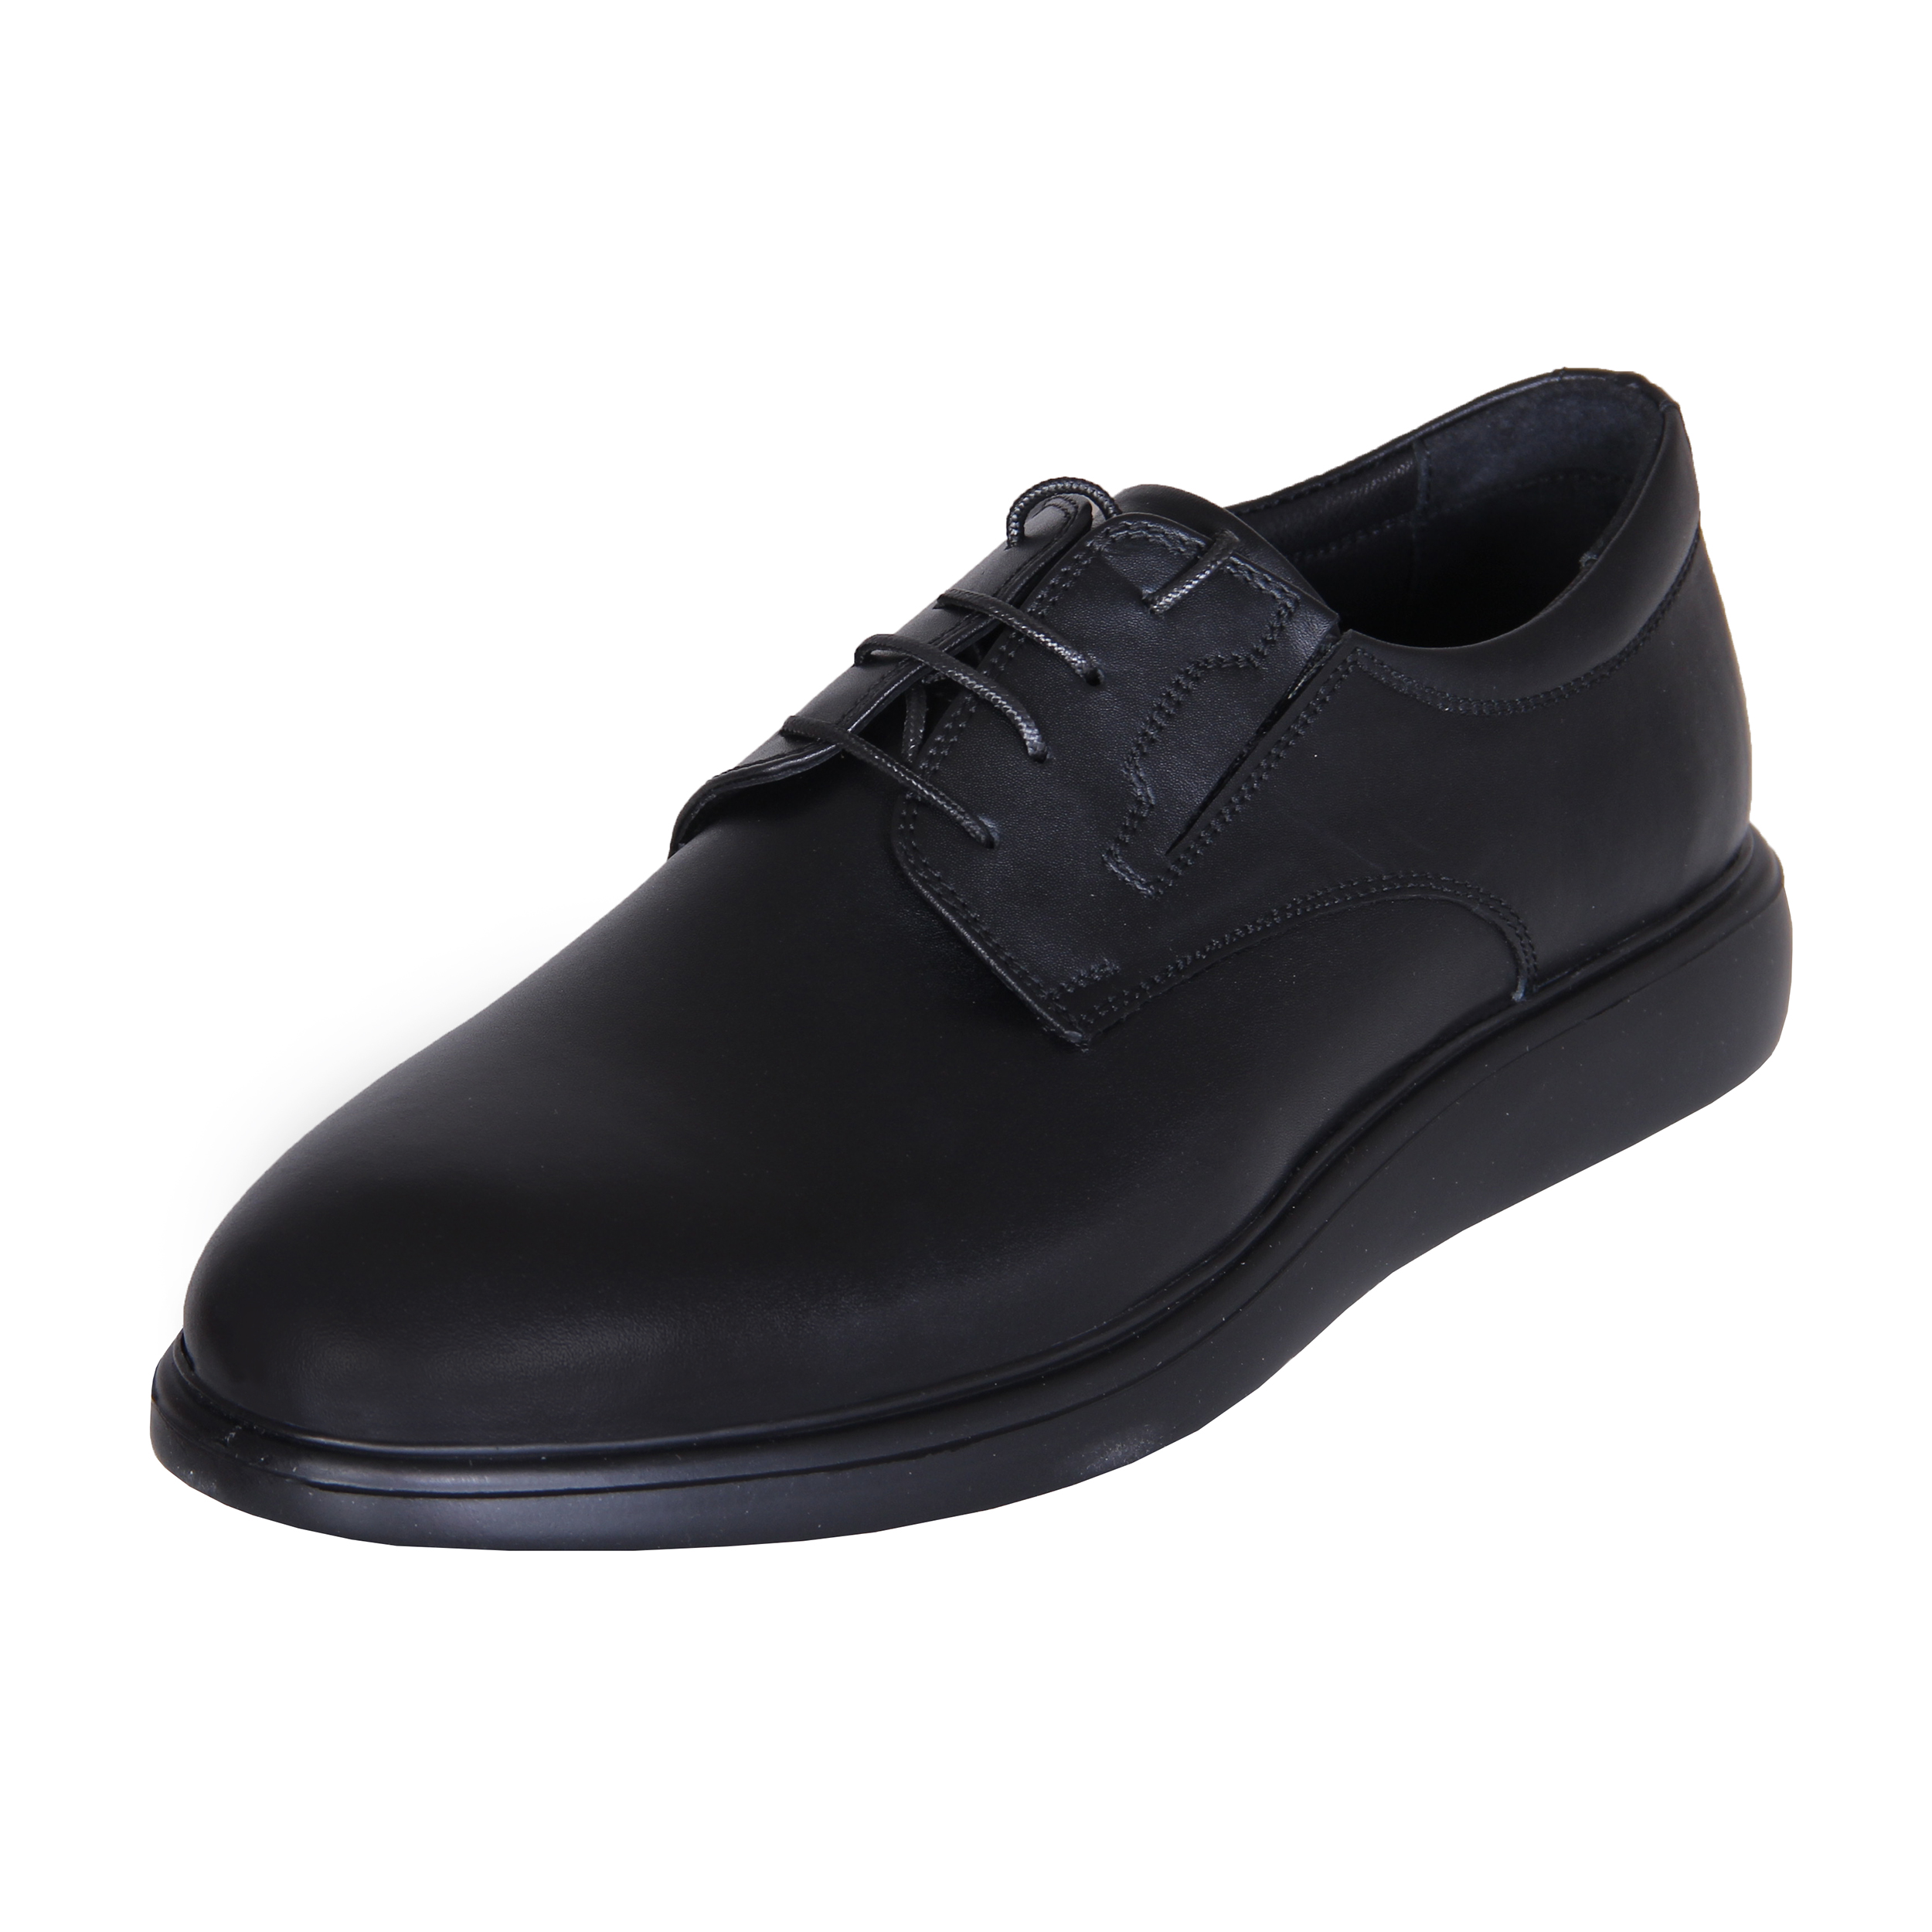 SHAHRECHARM leather men's casual shoes , MT61-1 Model